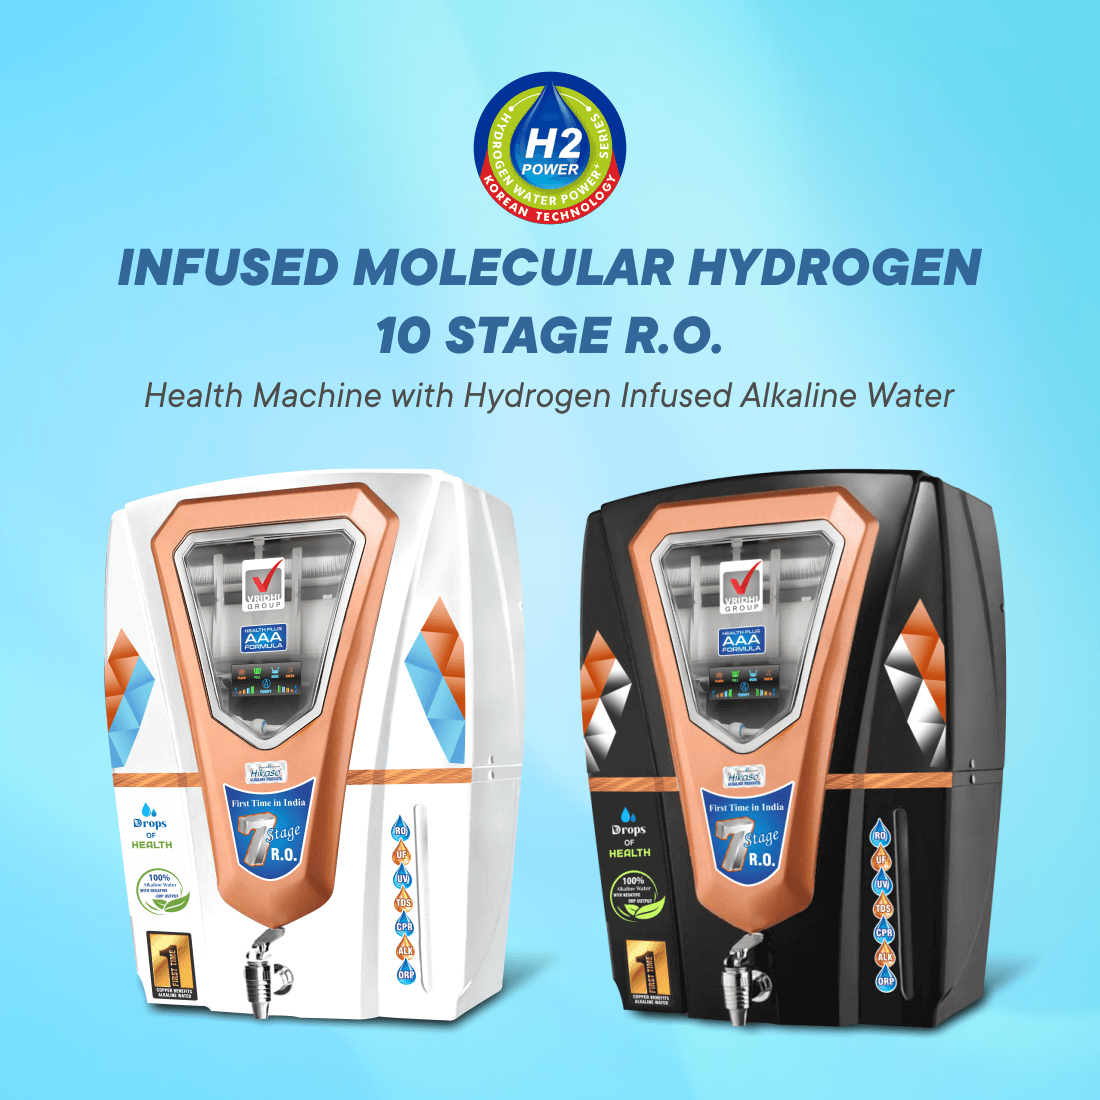 Infused Molecular Hydrogen 10 Stage R.O.